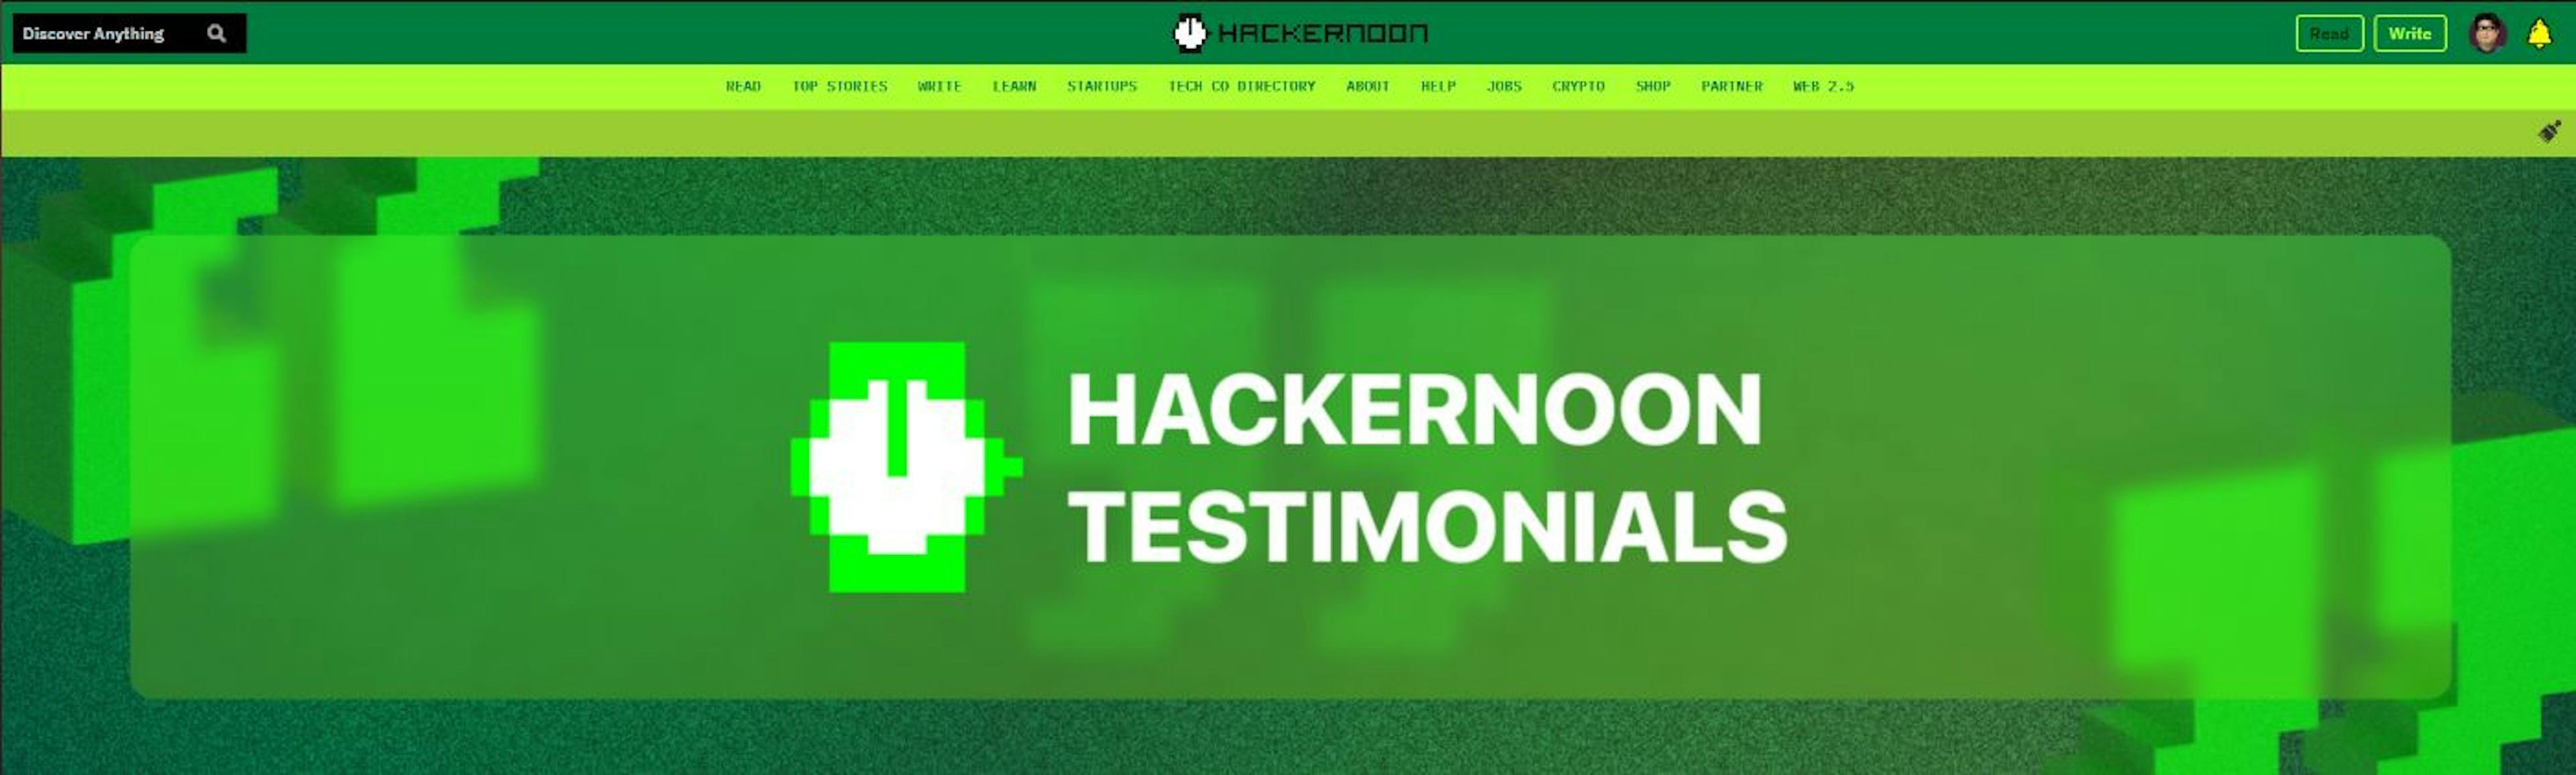 featured image - 誰もが HackerNoon を読んで公開すべき膨大な理由